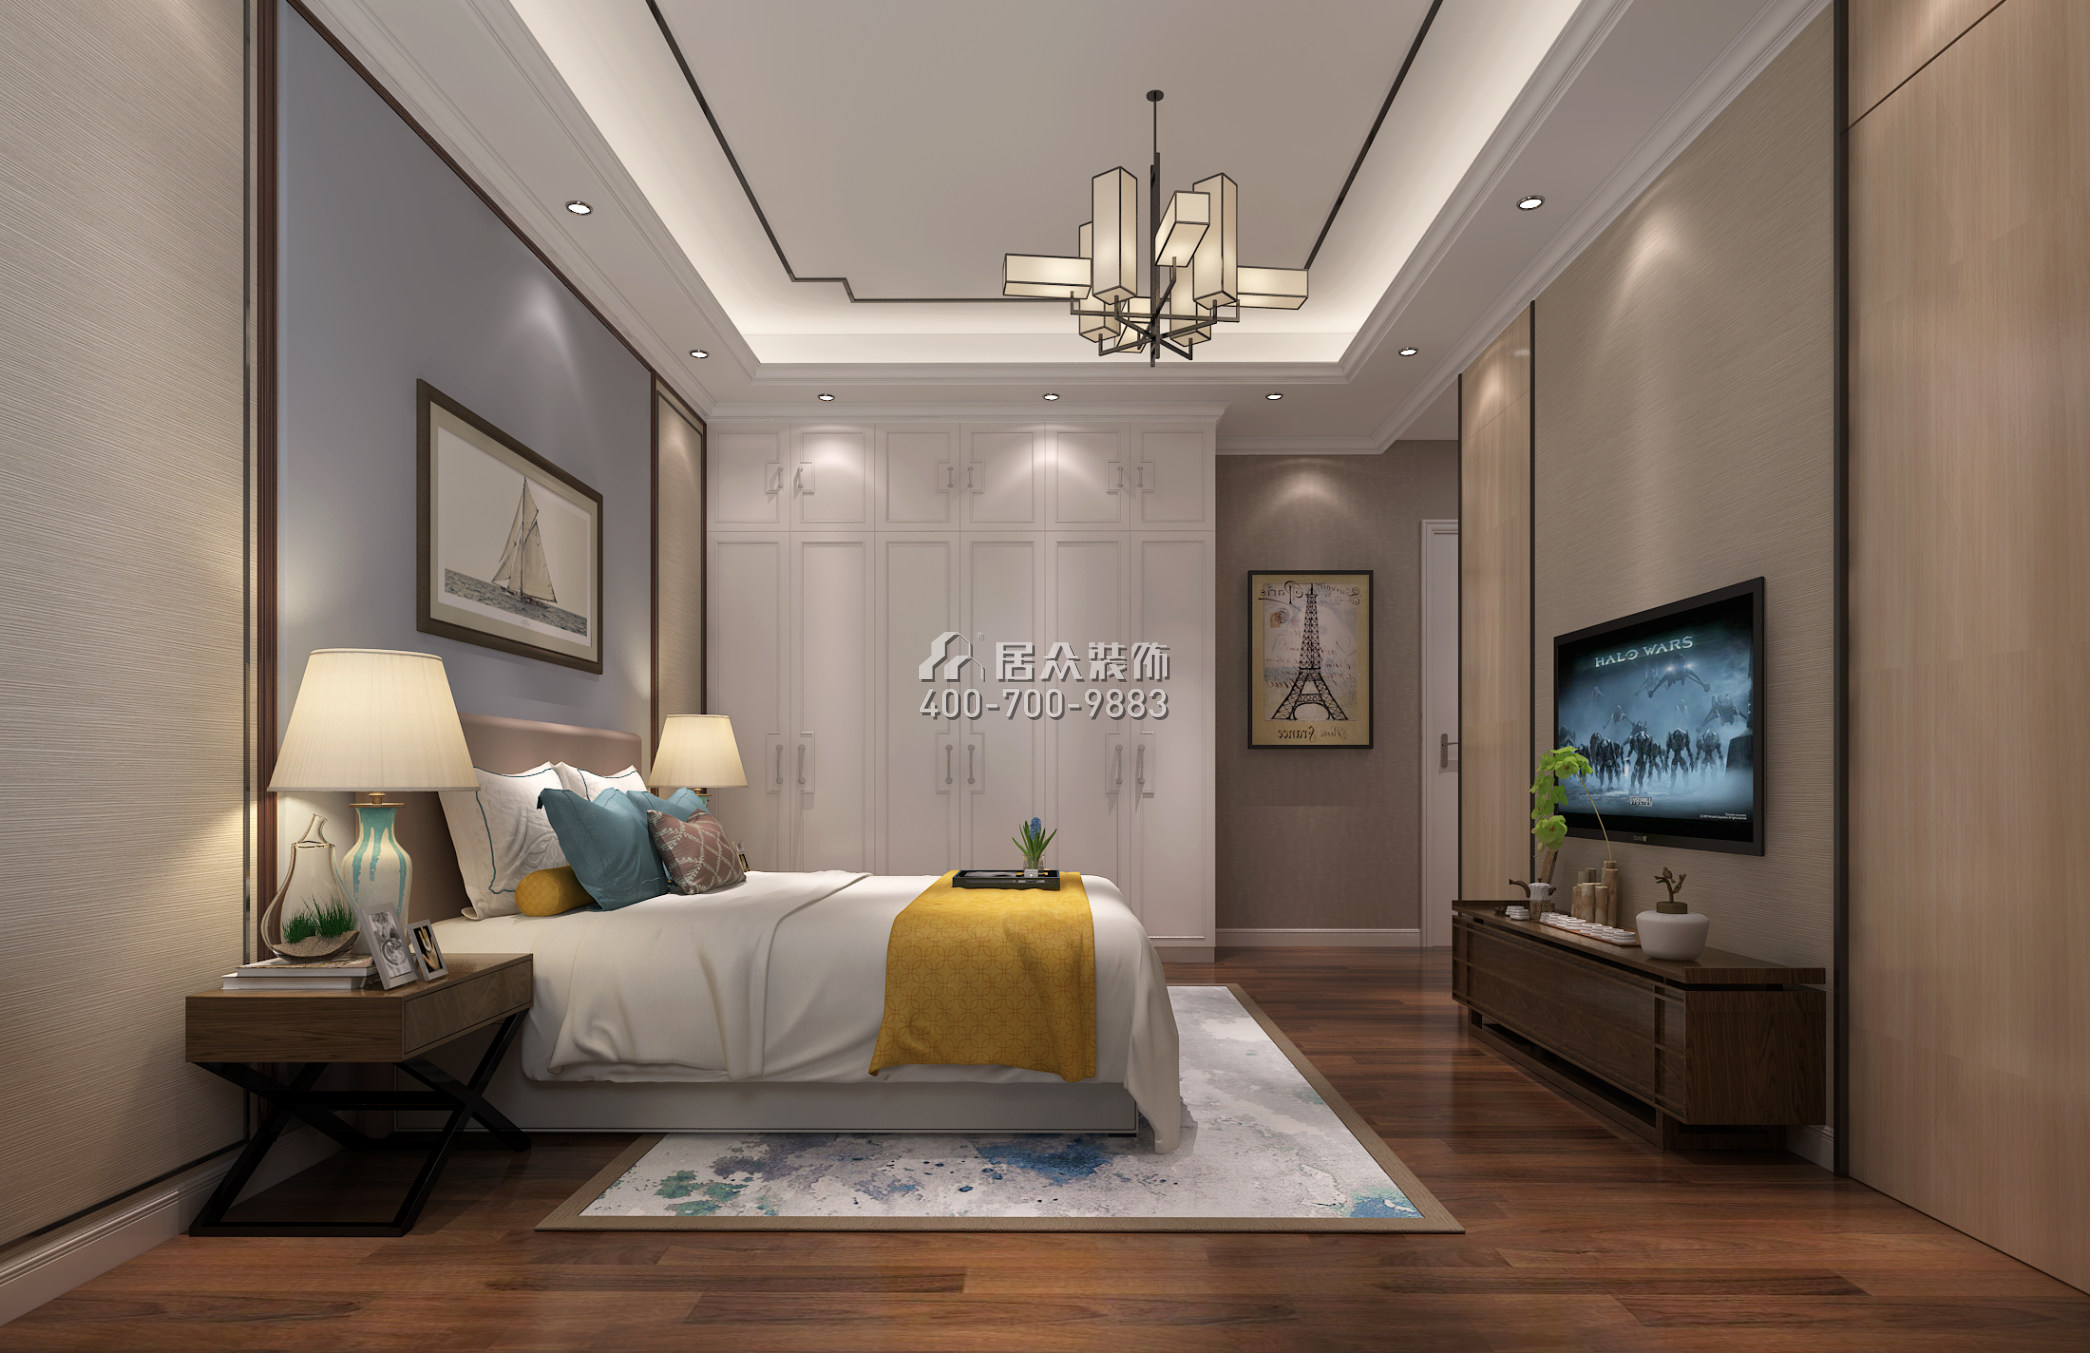 天悦湾160平方米中式风格平层户型卧室装修效果图